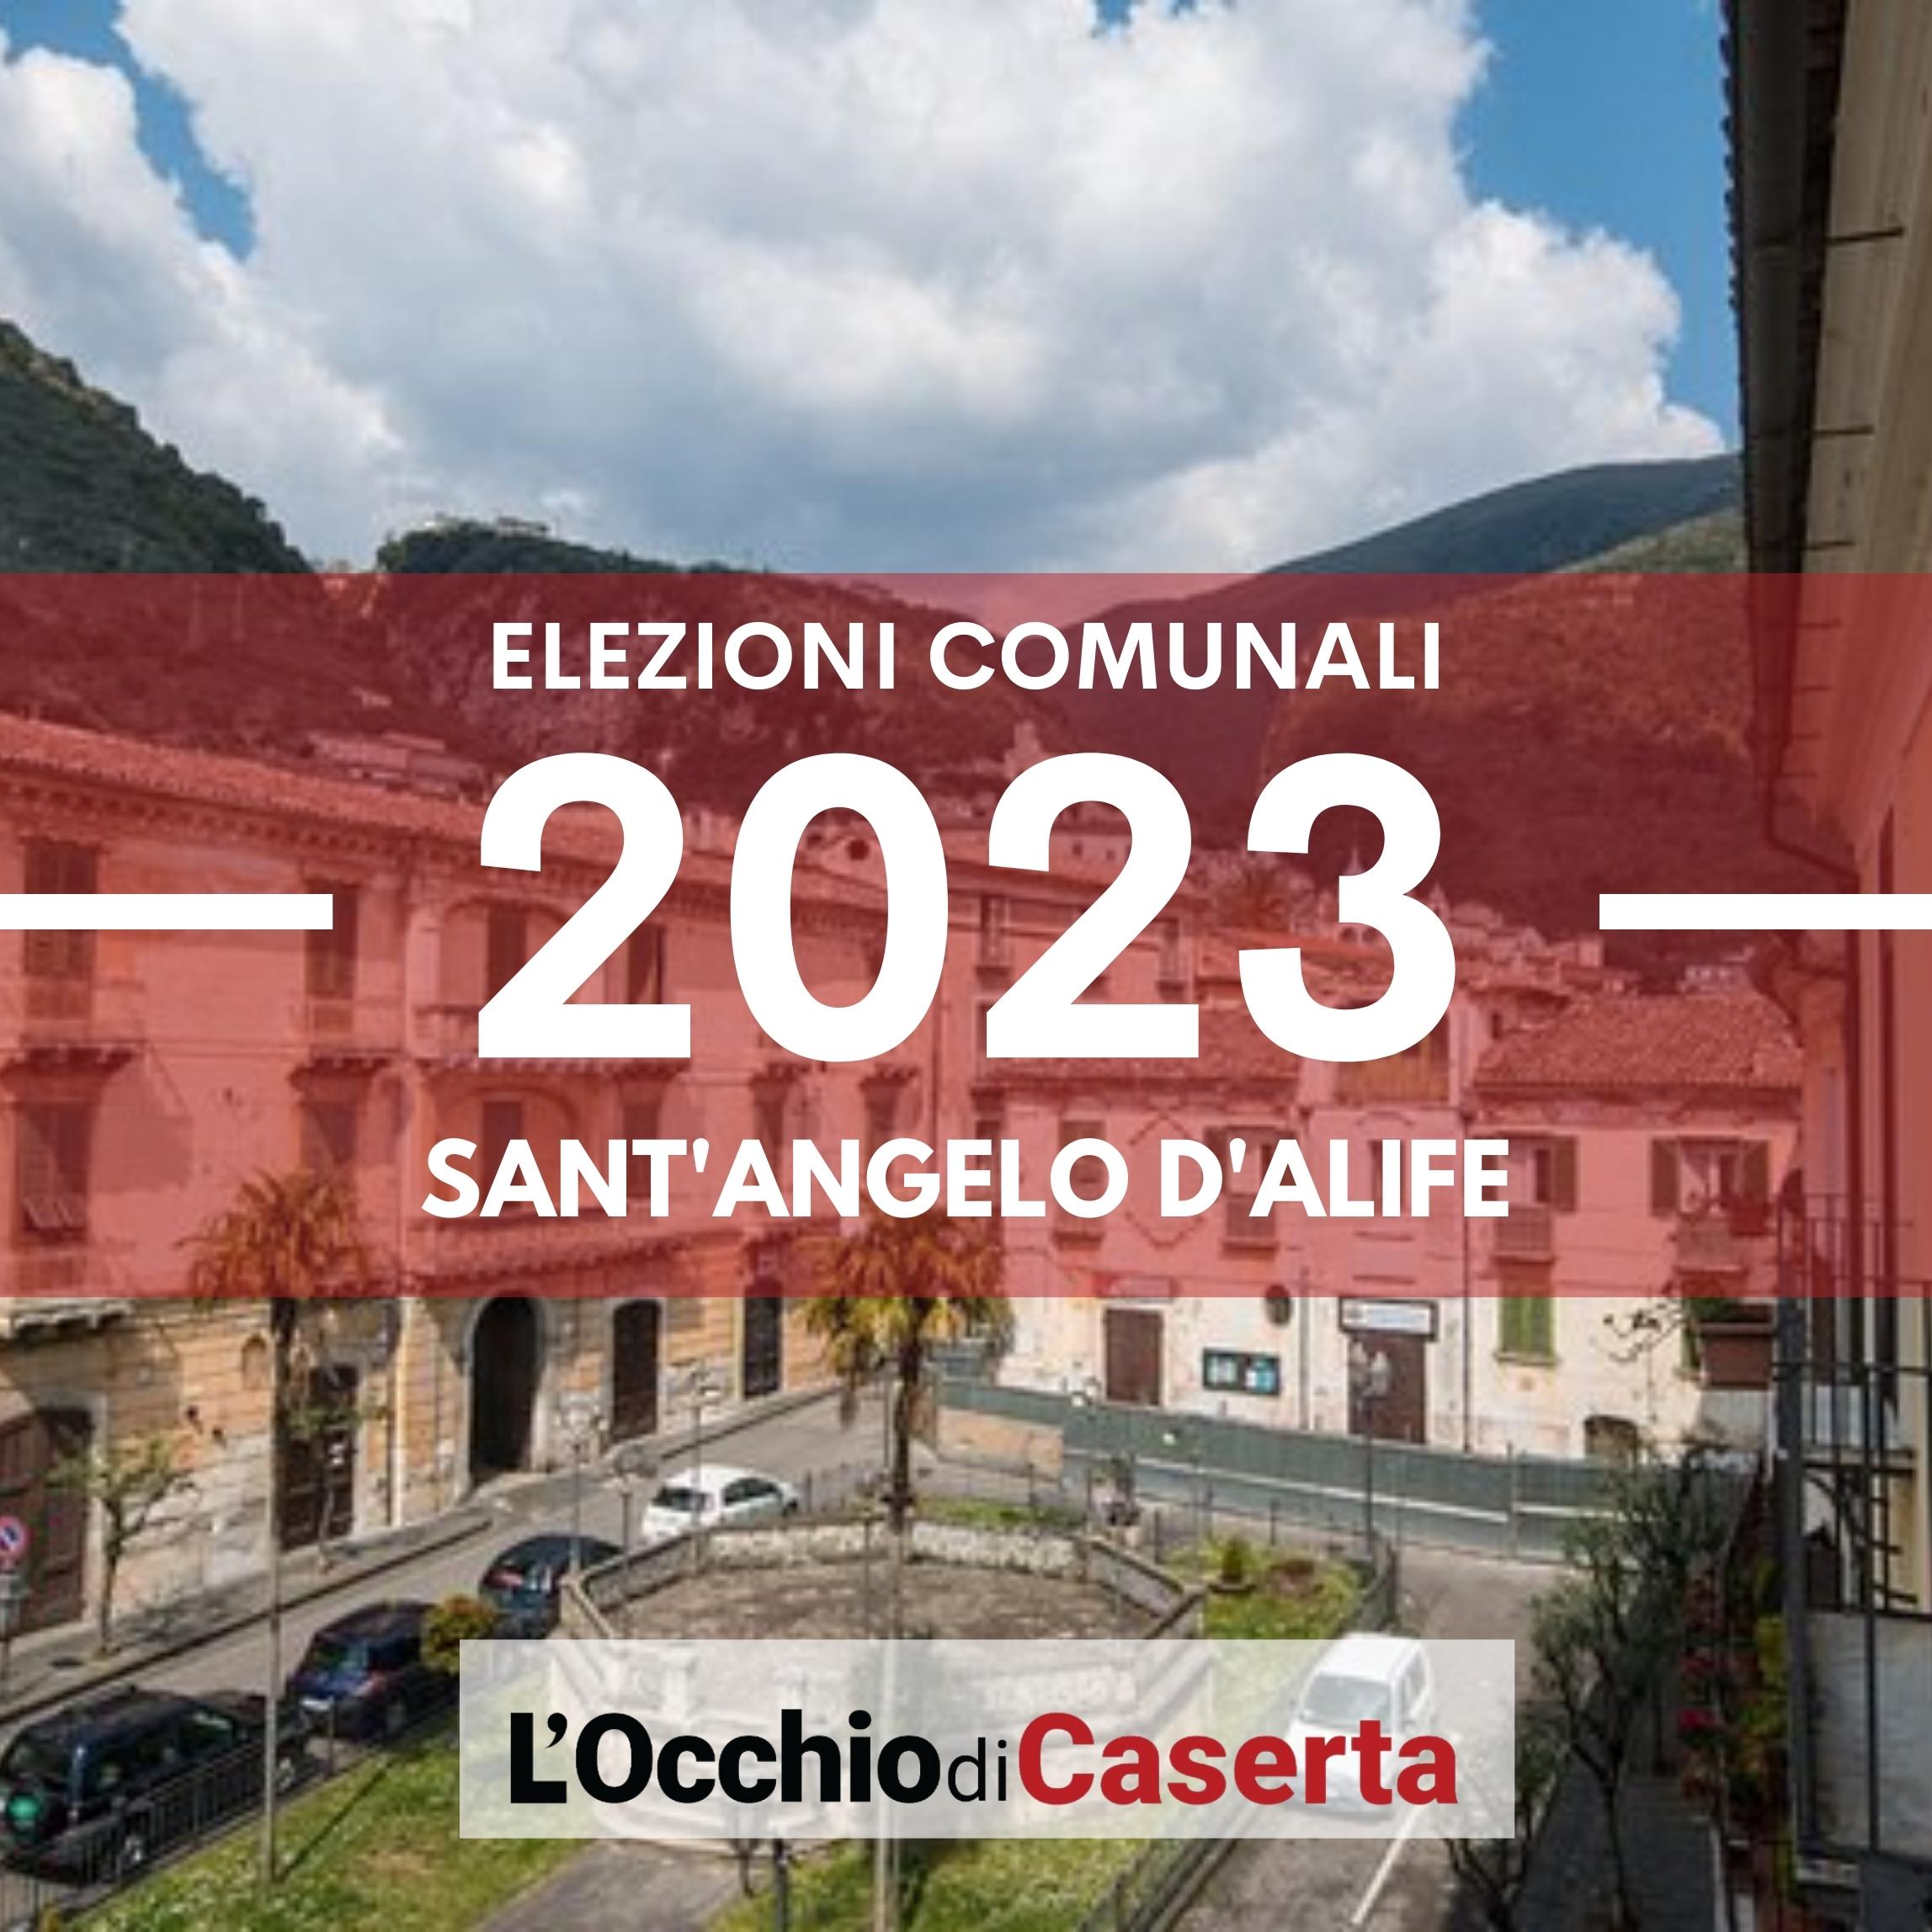 Elezioni comunali 2023 Sant'Angelo d'Alife liste candidati